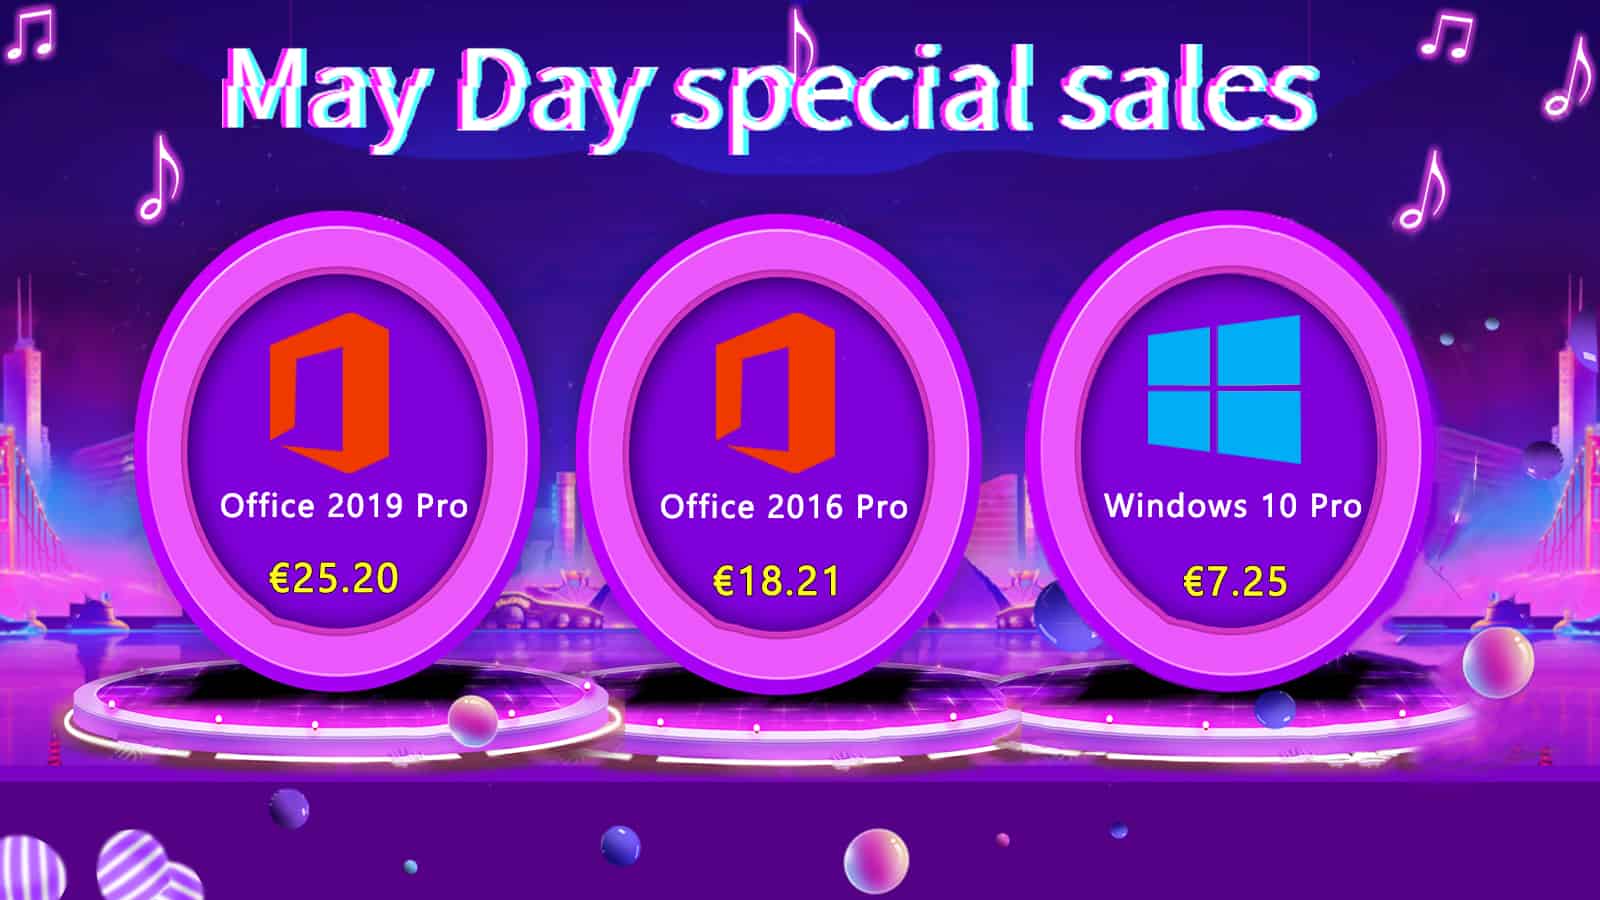 Ventes spéciales du 1er mai : Windows 10 Pro 7,25 € et Office 2019 Pro 25,20 € avec U2Key.